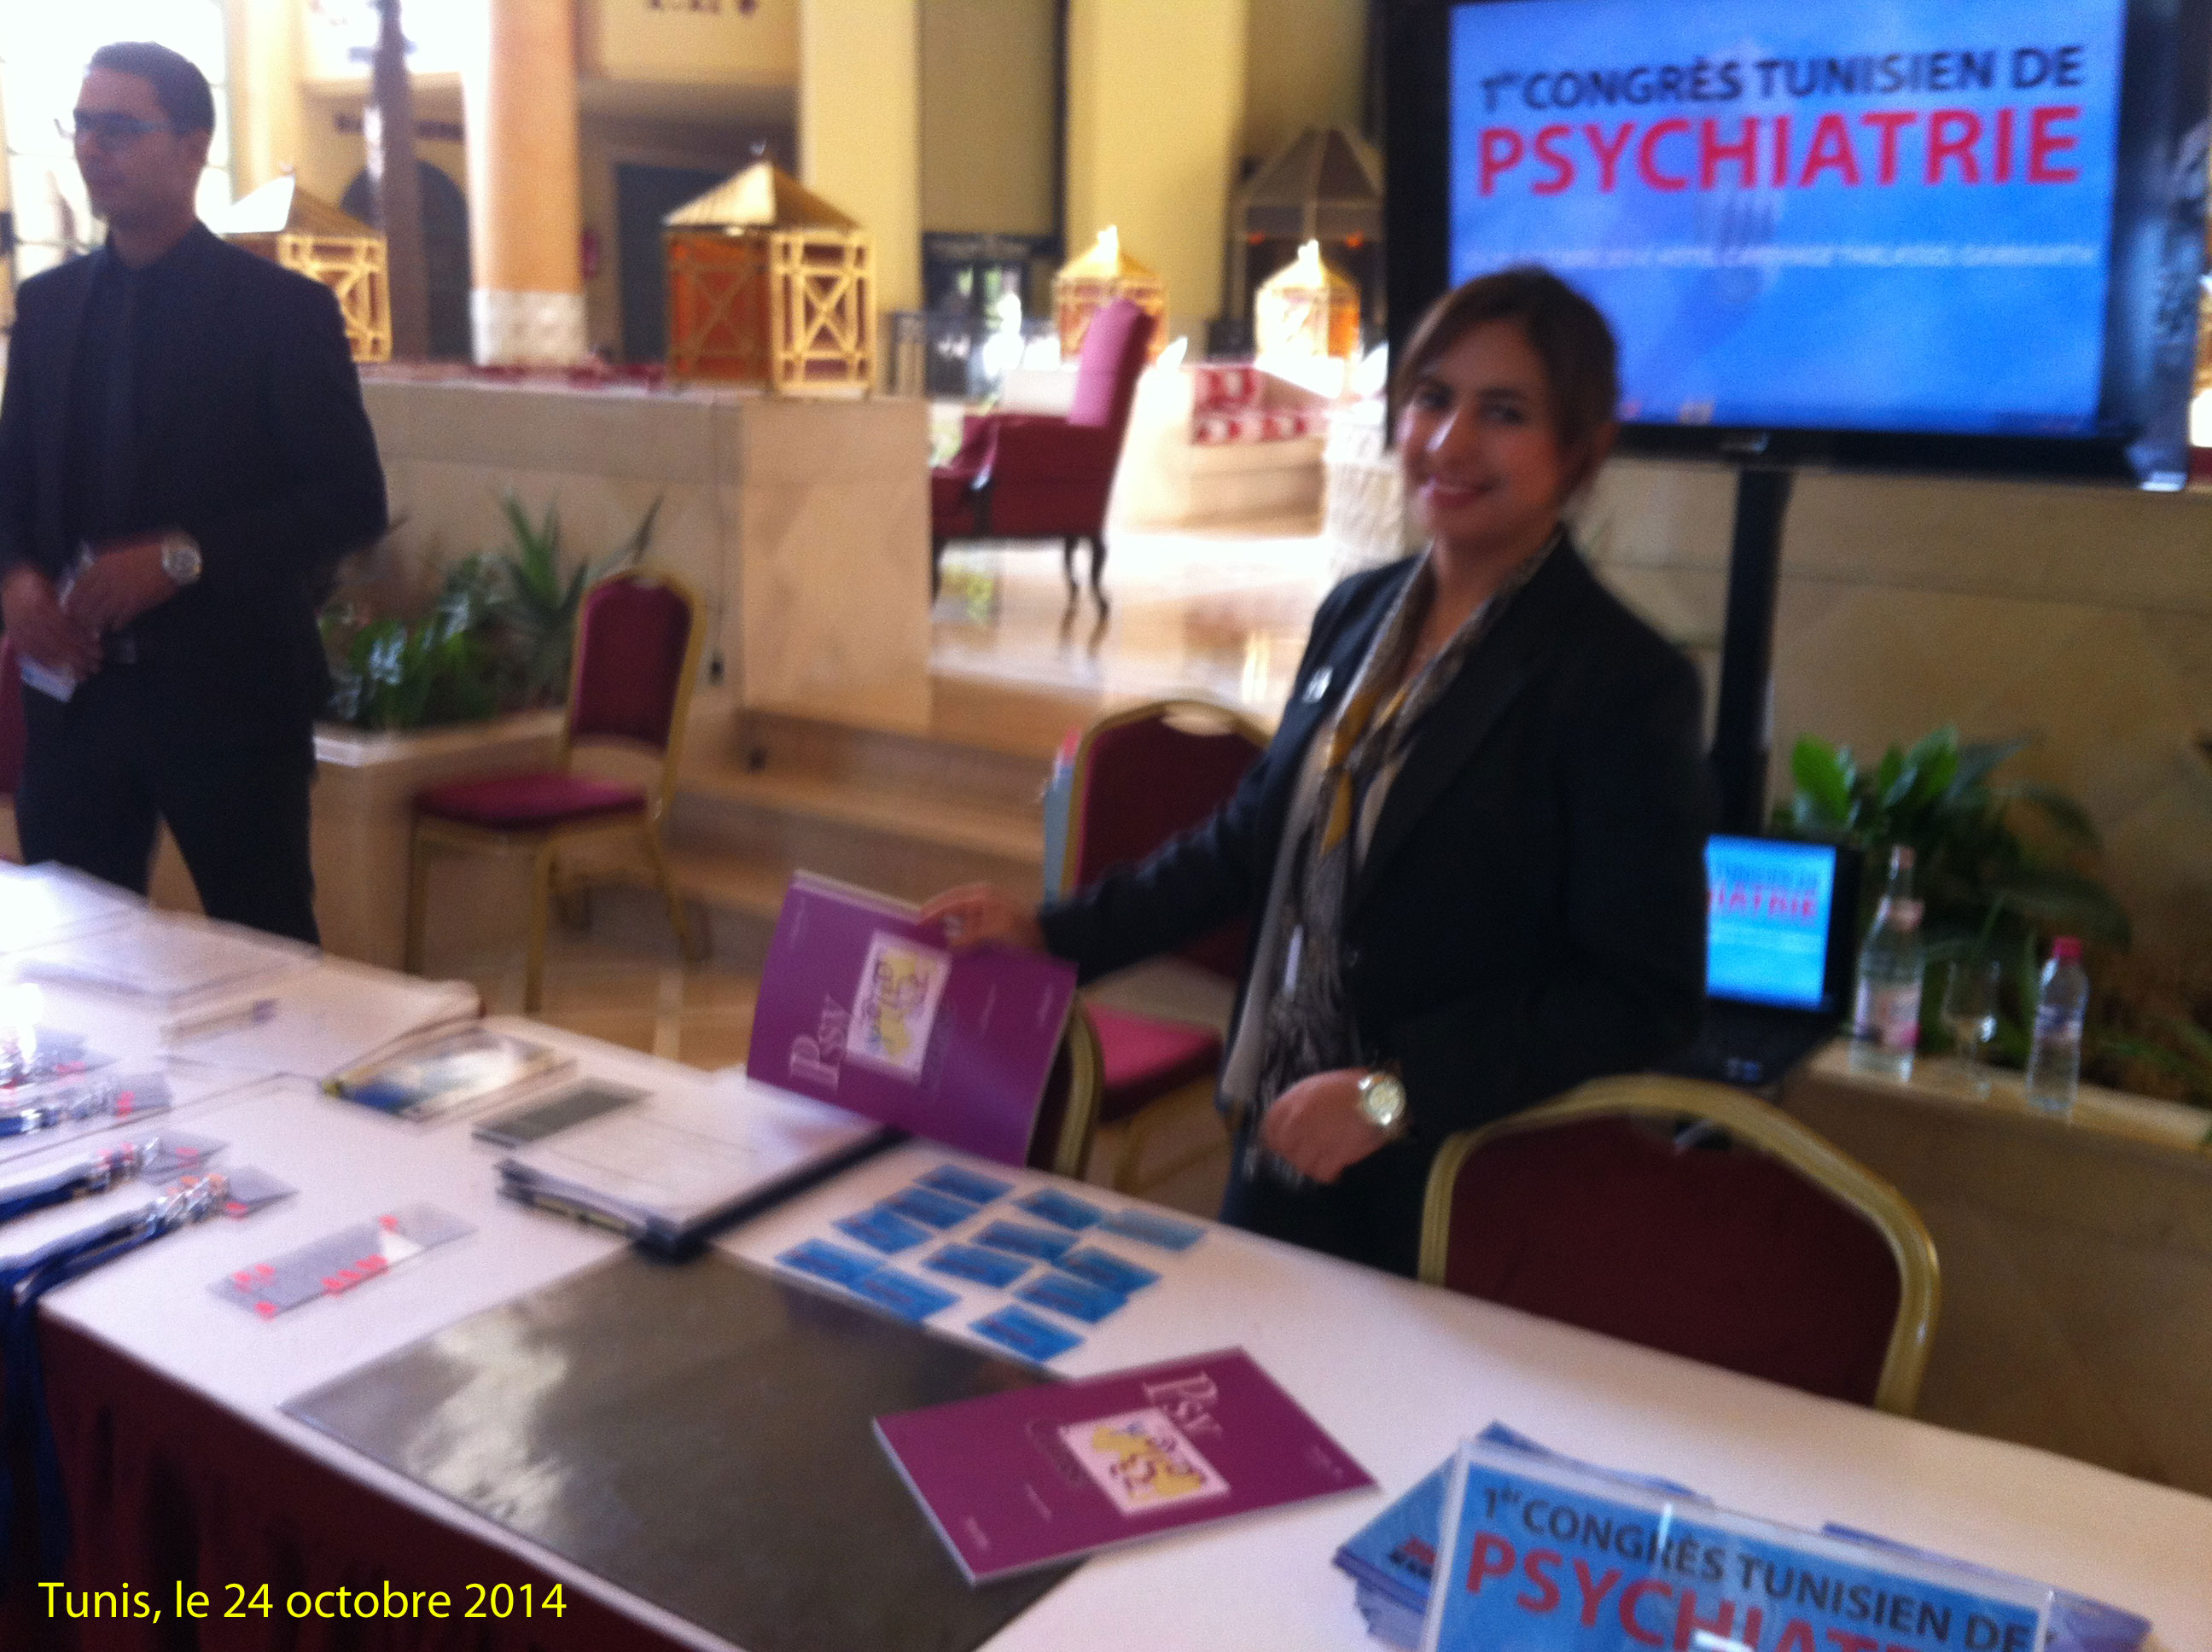 Premier congrès tunisien de psychiatrie (23 au 25 octobre 2014)